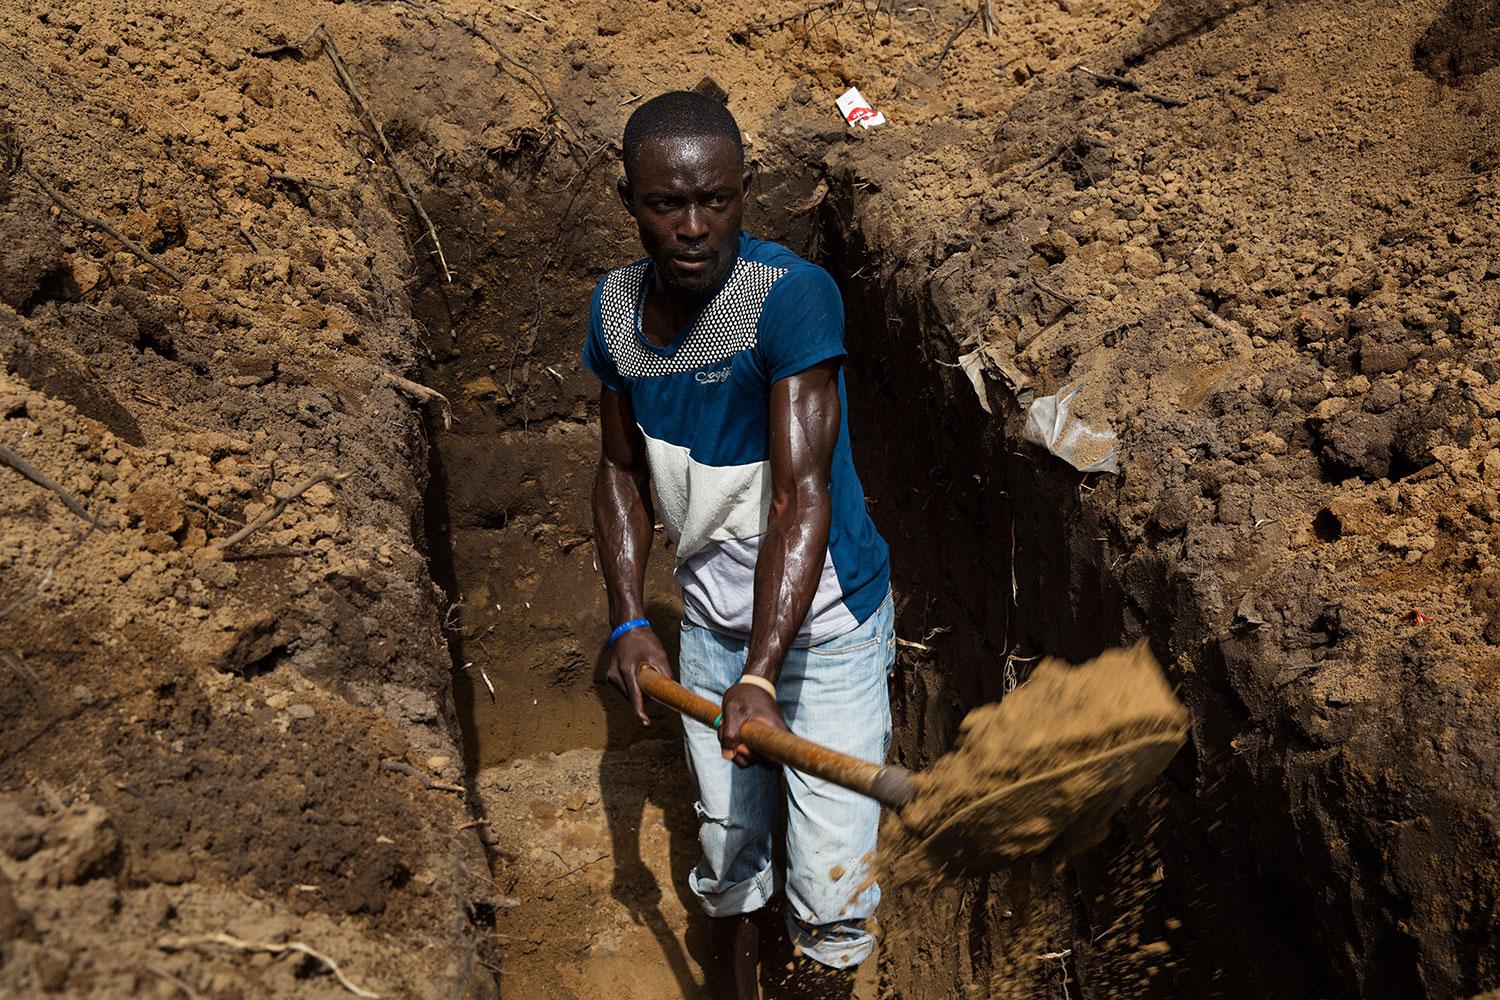 Rendall Marshall, 21, är dödgrävare: ”Jag är dödgrävare. Det är inte roligt, men det är ett jobb”.